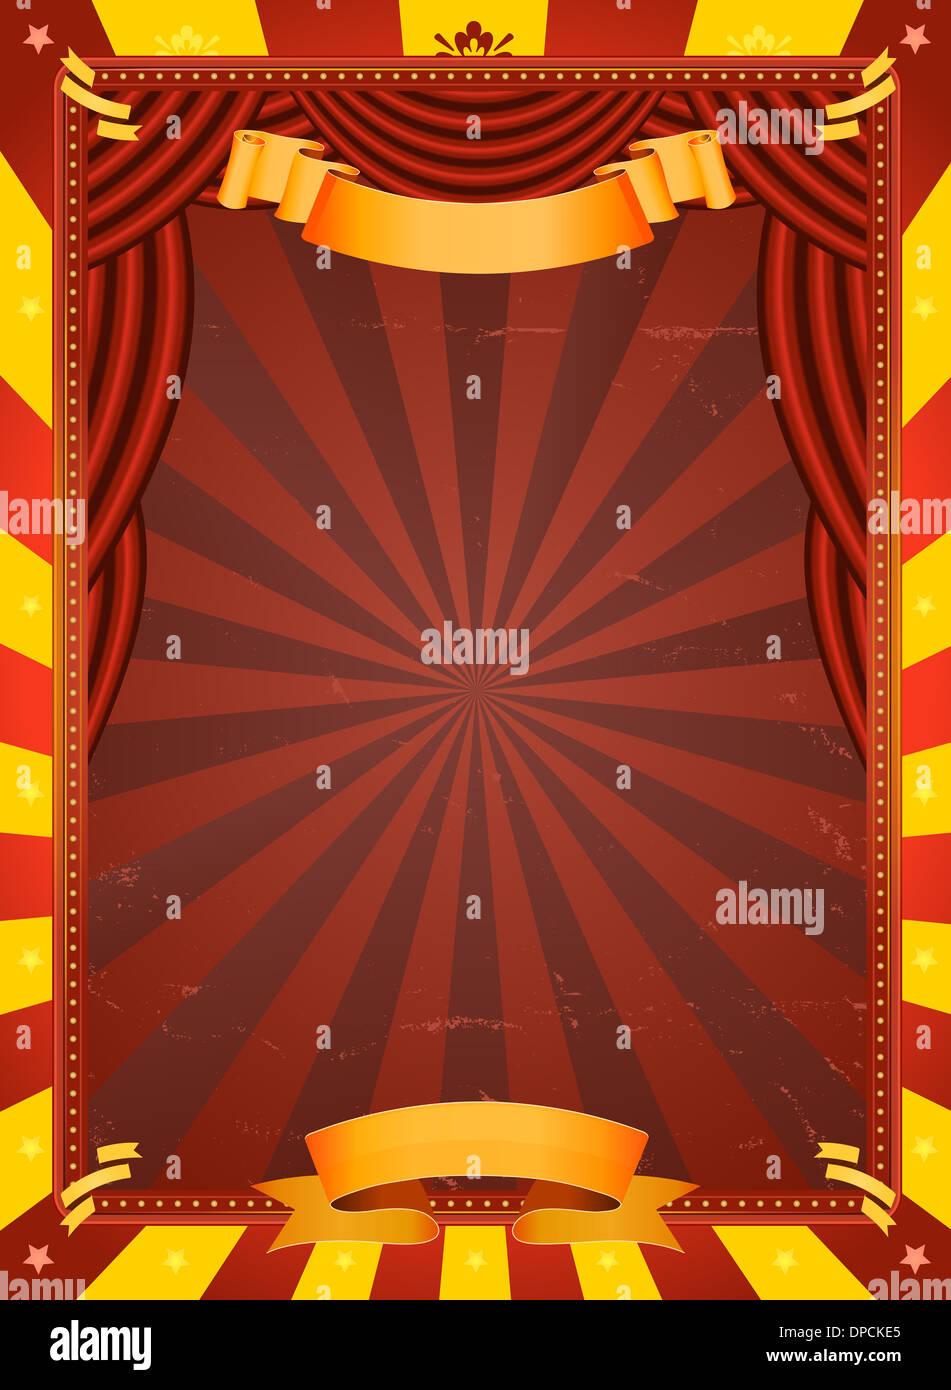 Illustration d'un cirque rouge et jaune rétro avec fond grunge texture et des rideaux rouges pour événements Arts et divertissements Banque D'Images